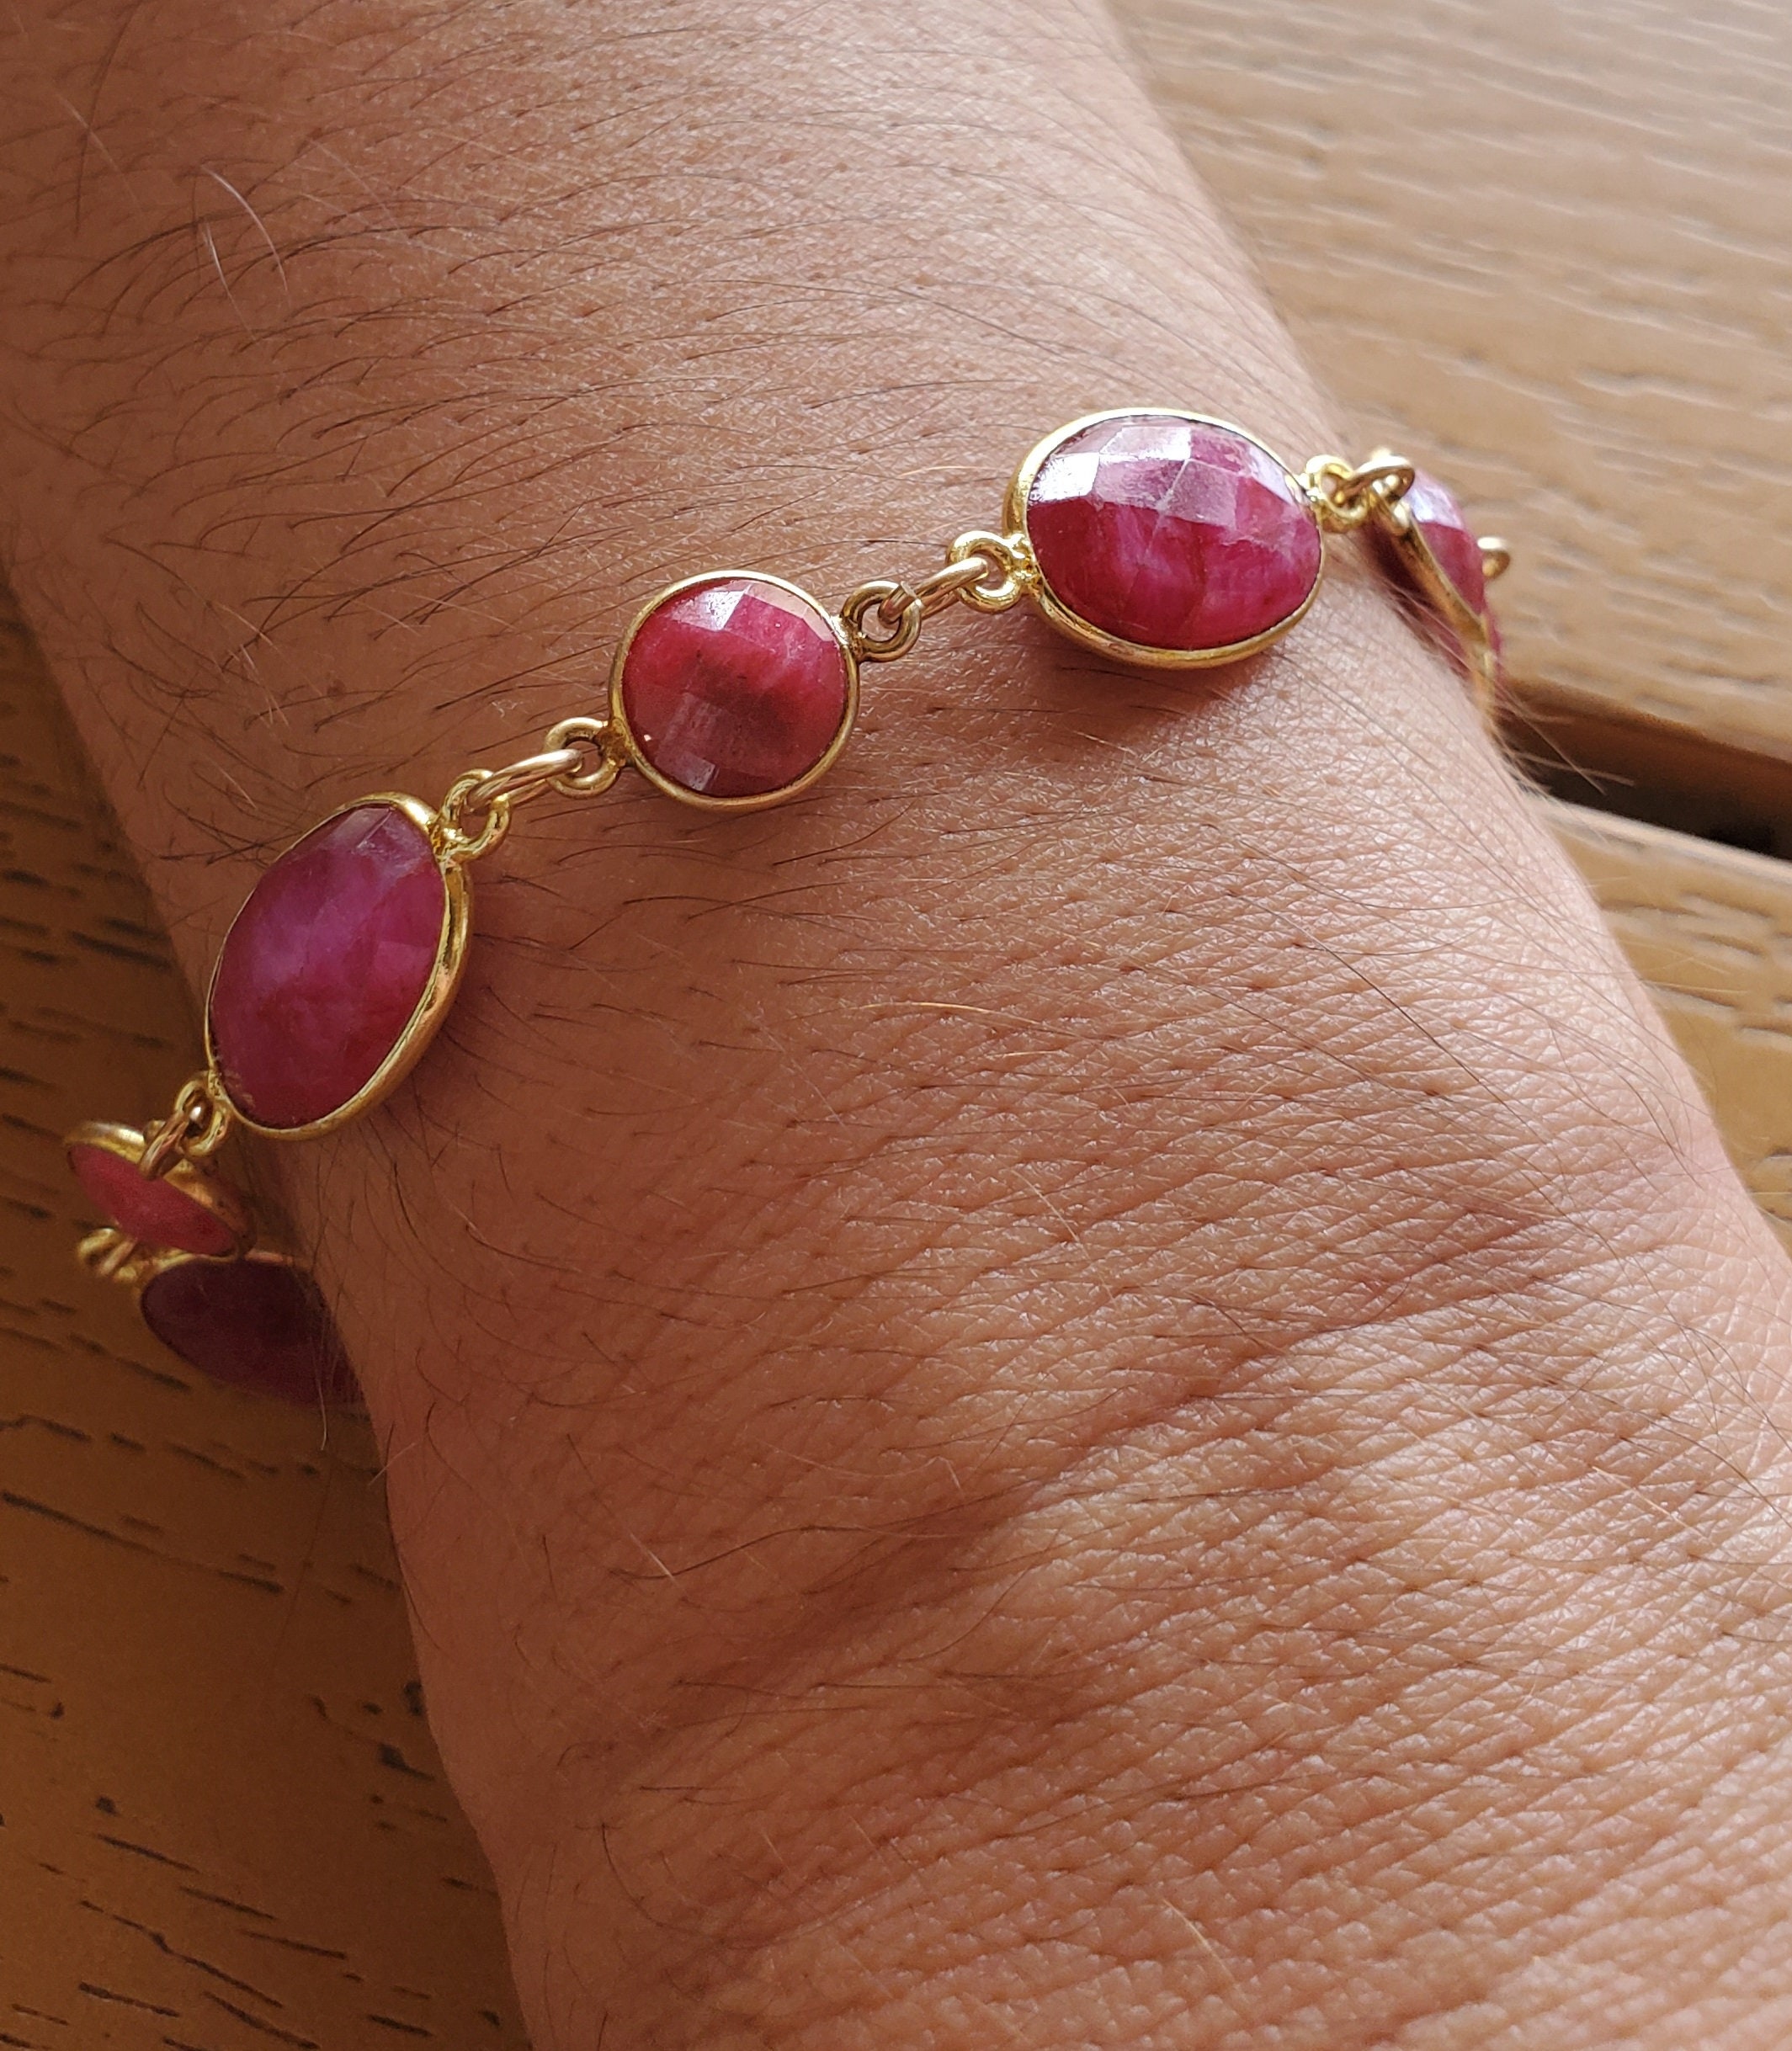 She Glows from Within: carnelian + ruby bracelet - Sophia Forero Designs